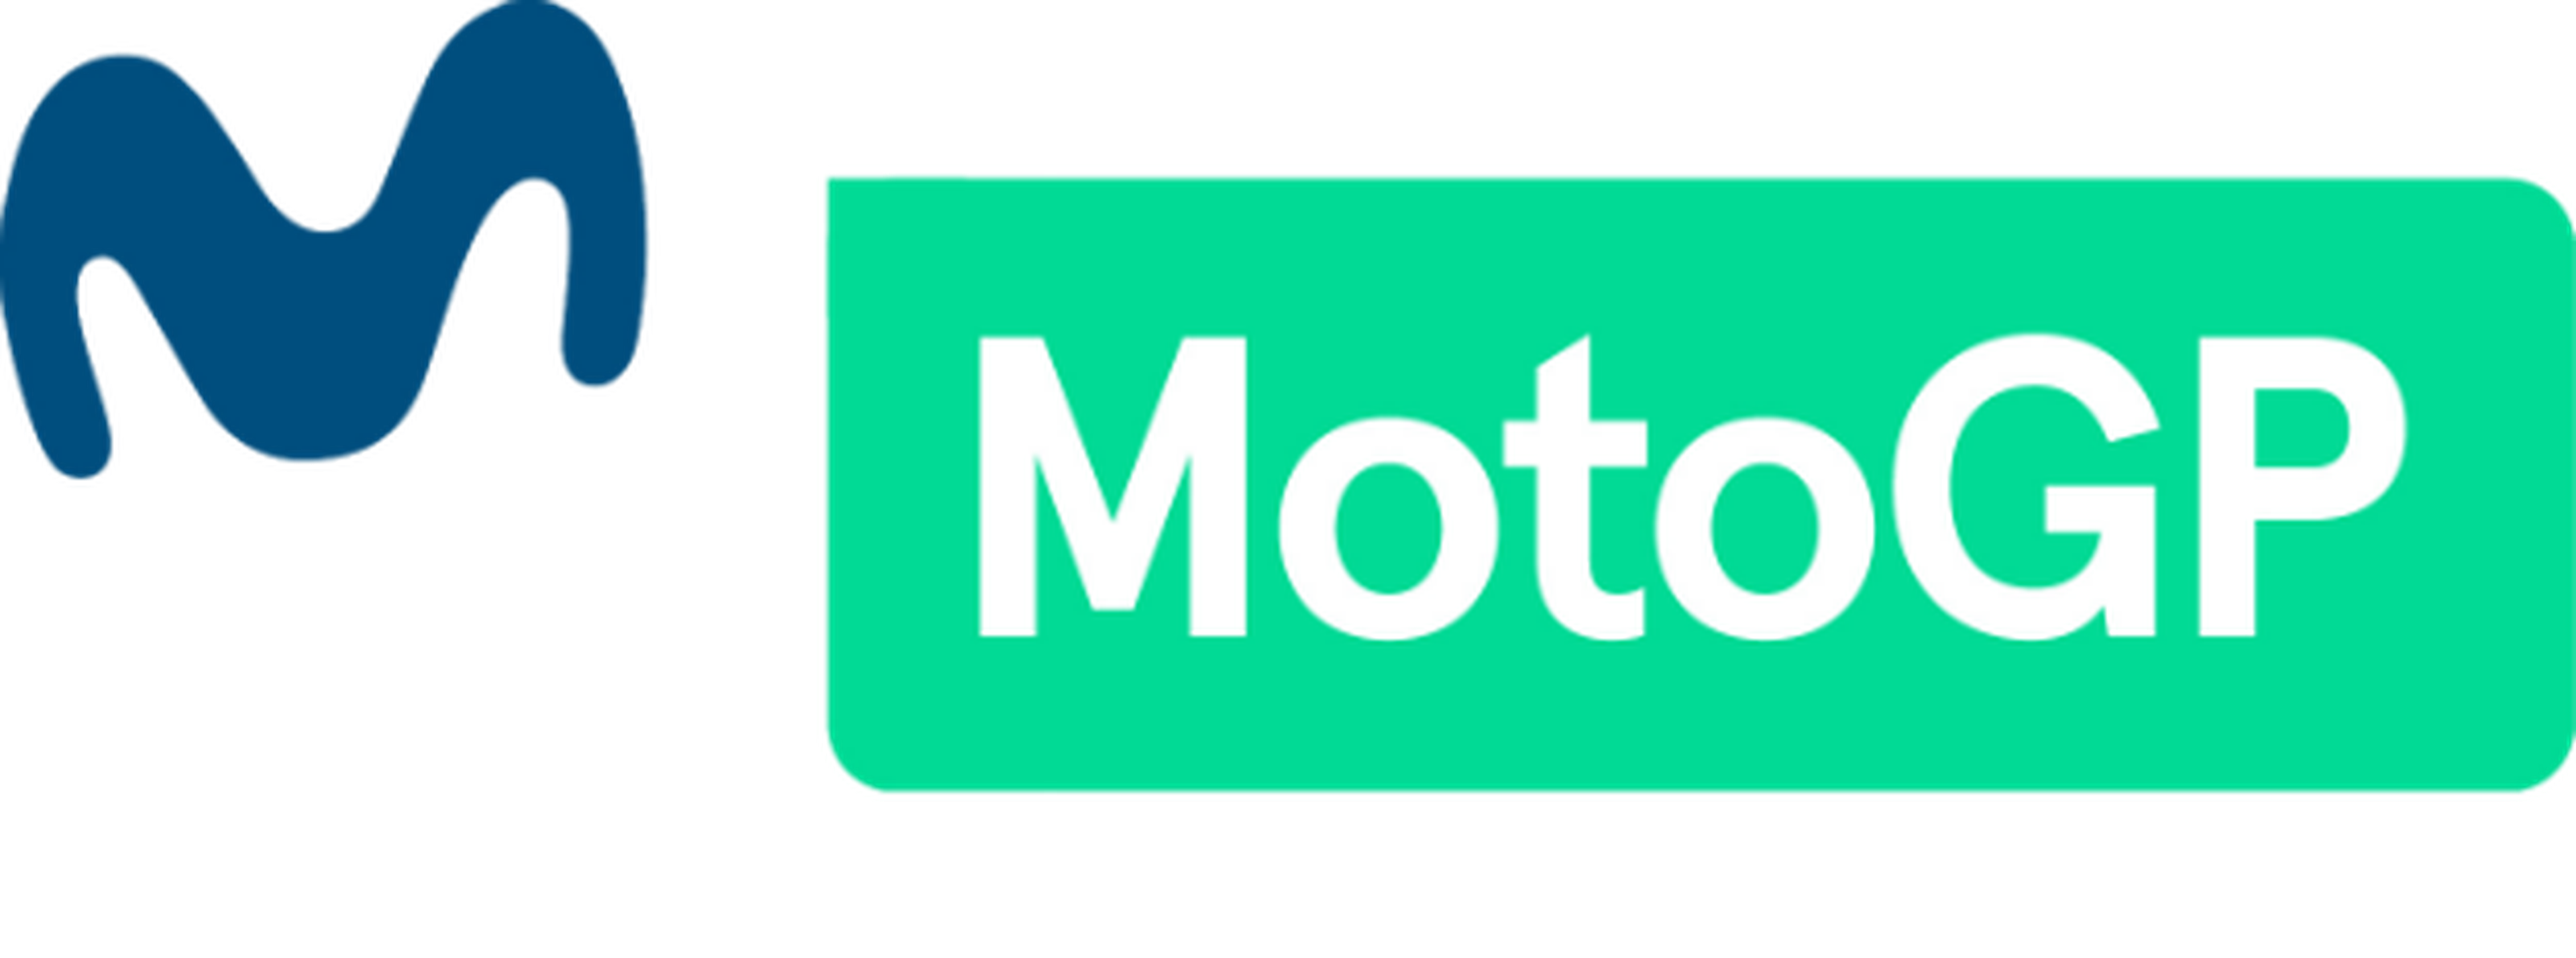 GP de Japón de MotoGP 2017: cómo ver la carrera en directo online por Internet